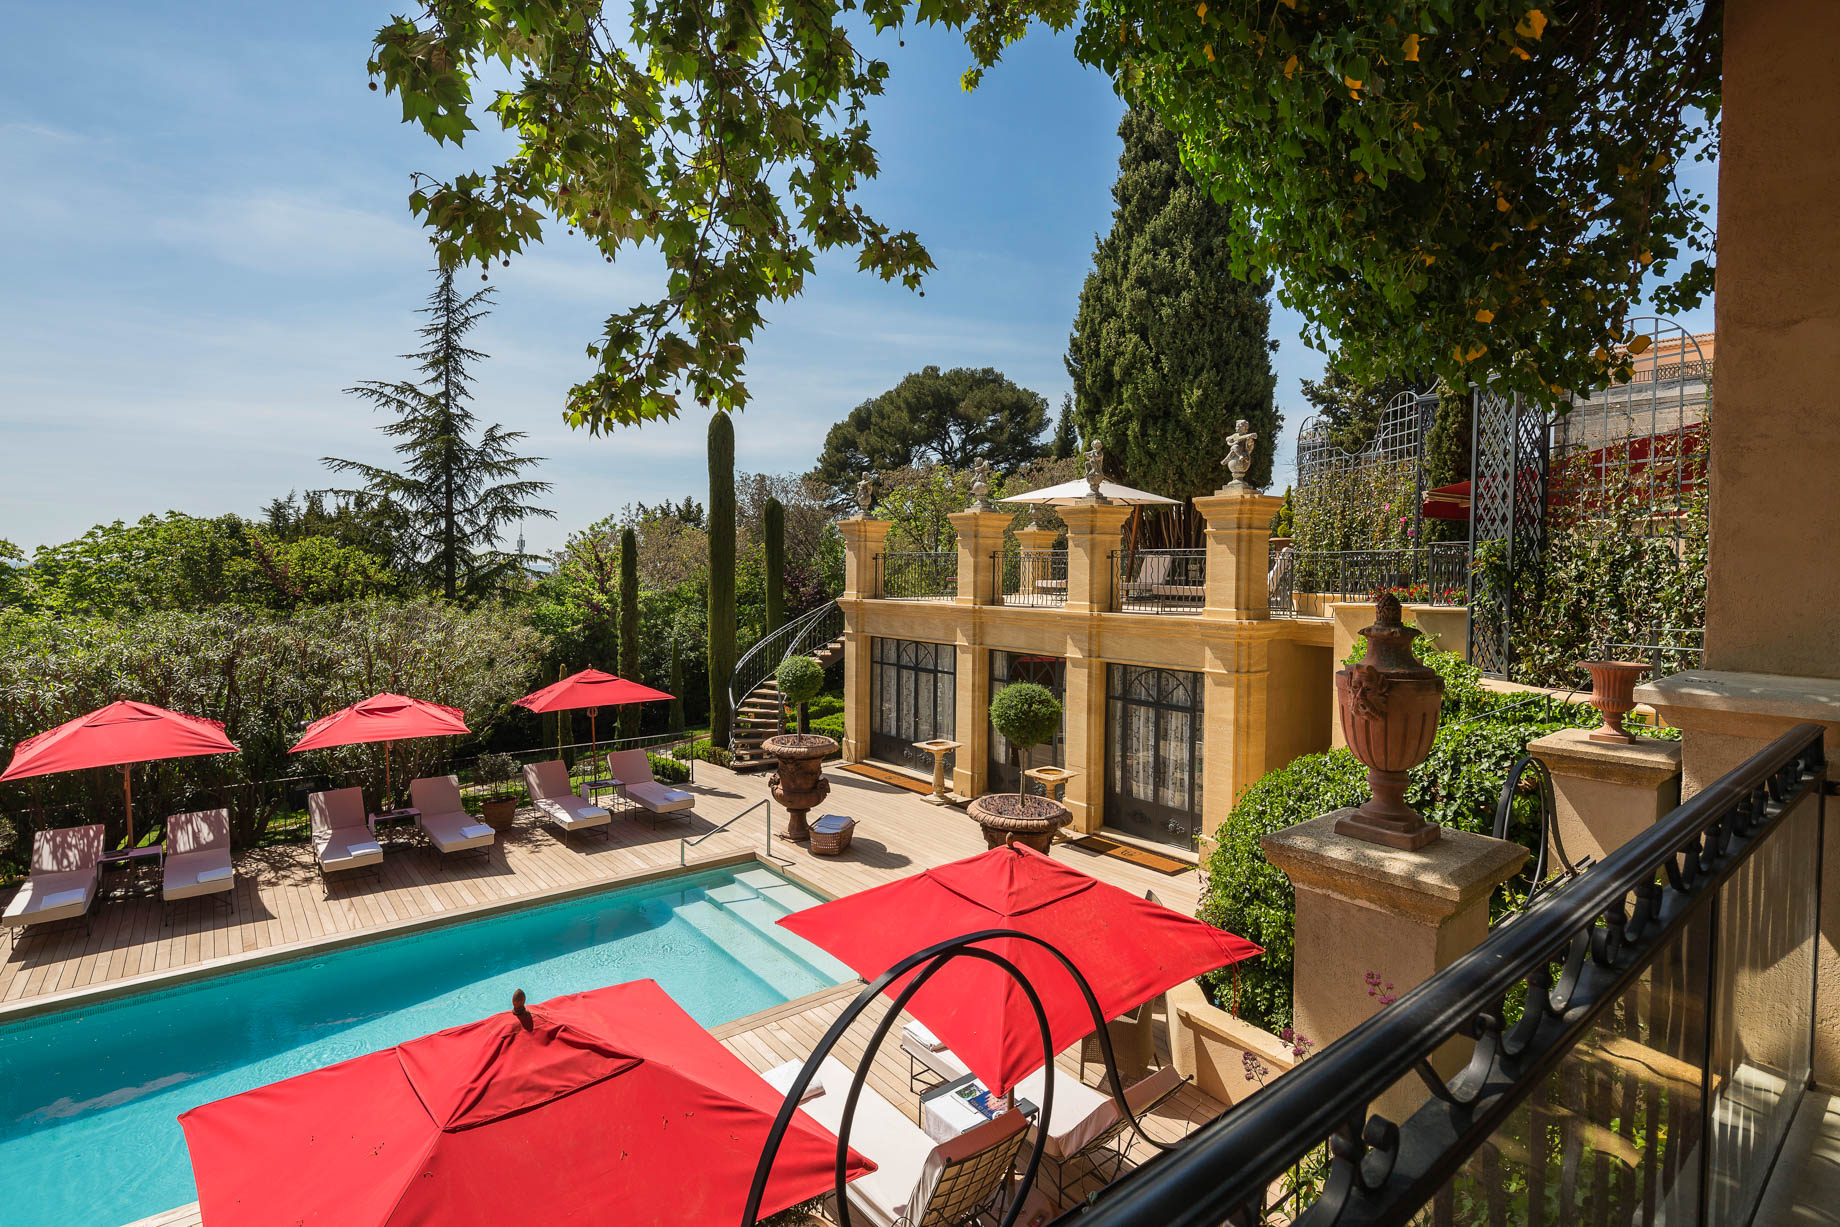 Villa Gallici Relais Châteaux Hotel – Aix-en-Provence, France – Pool Deck and Terrace View